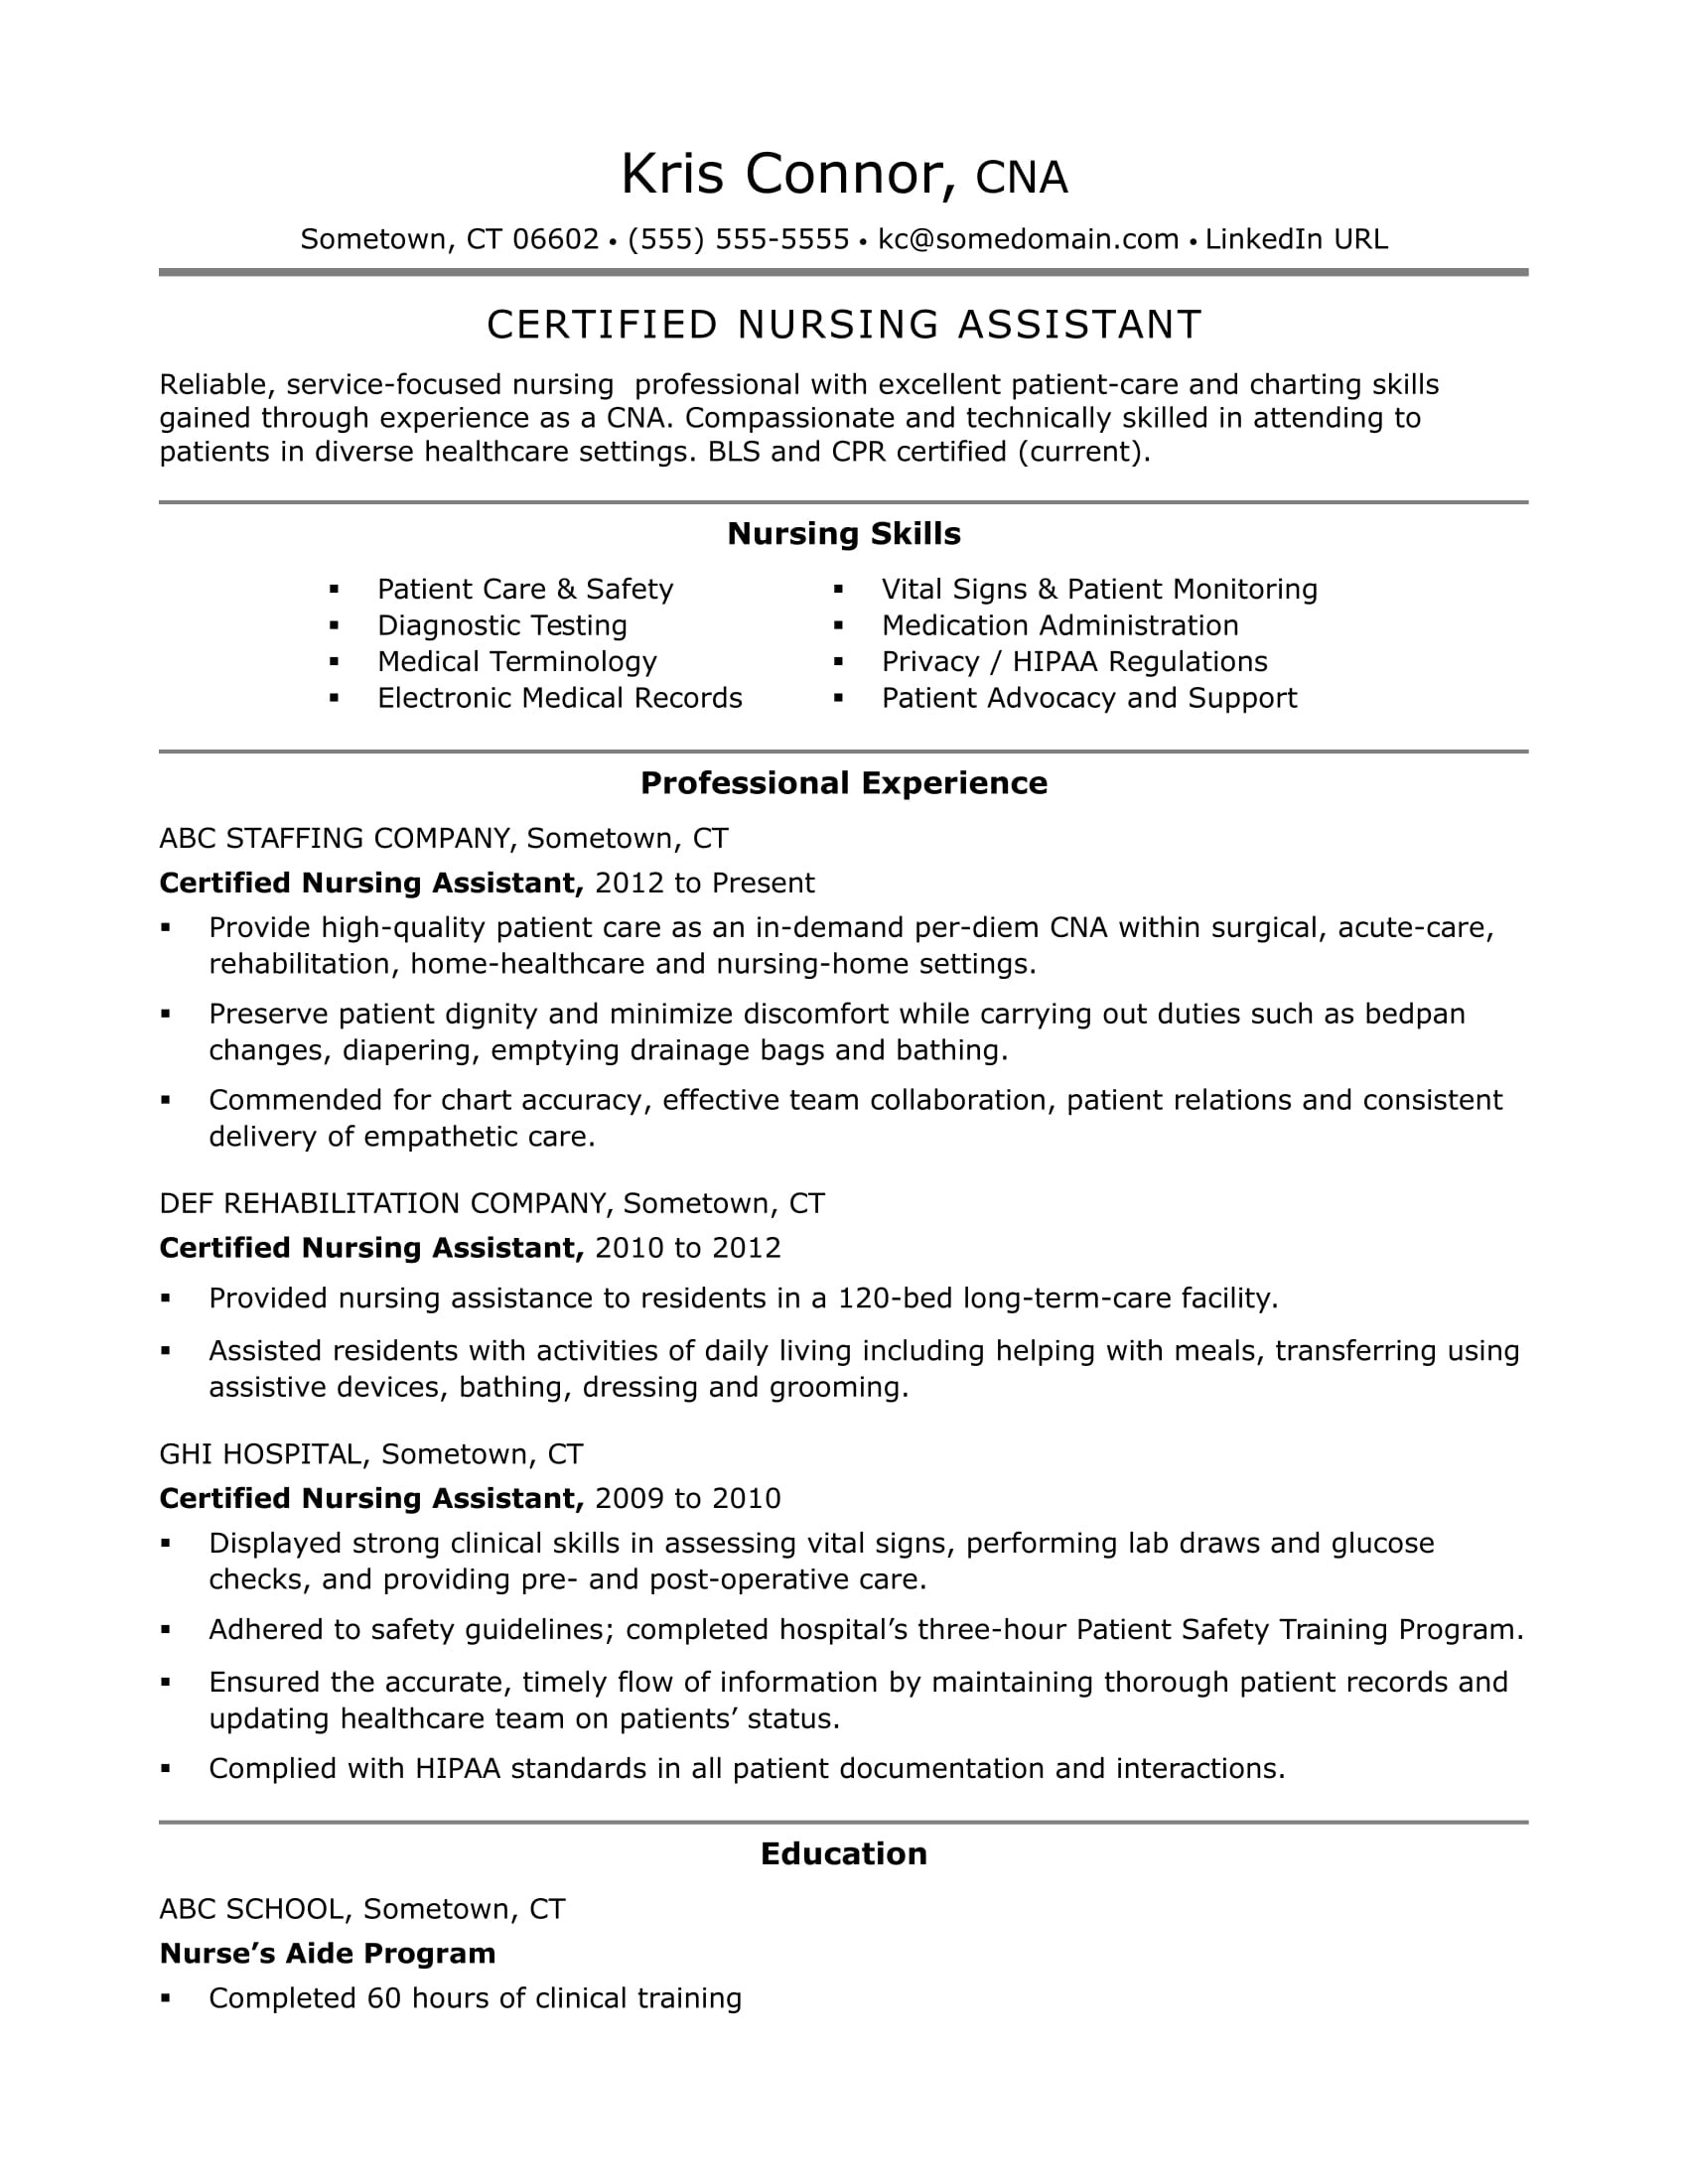 Home Health Care Nurse Resume Sample Cna Resume Examples: Skills for Cnas Monster.com